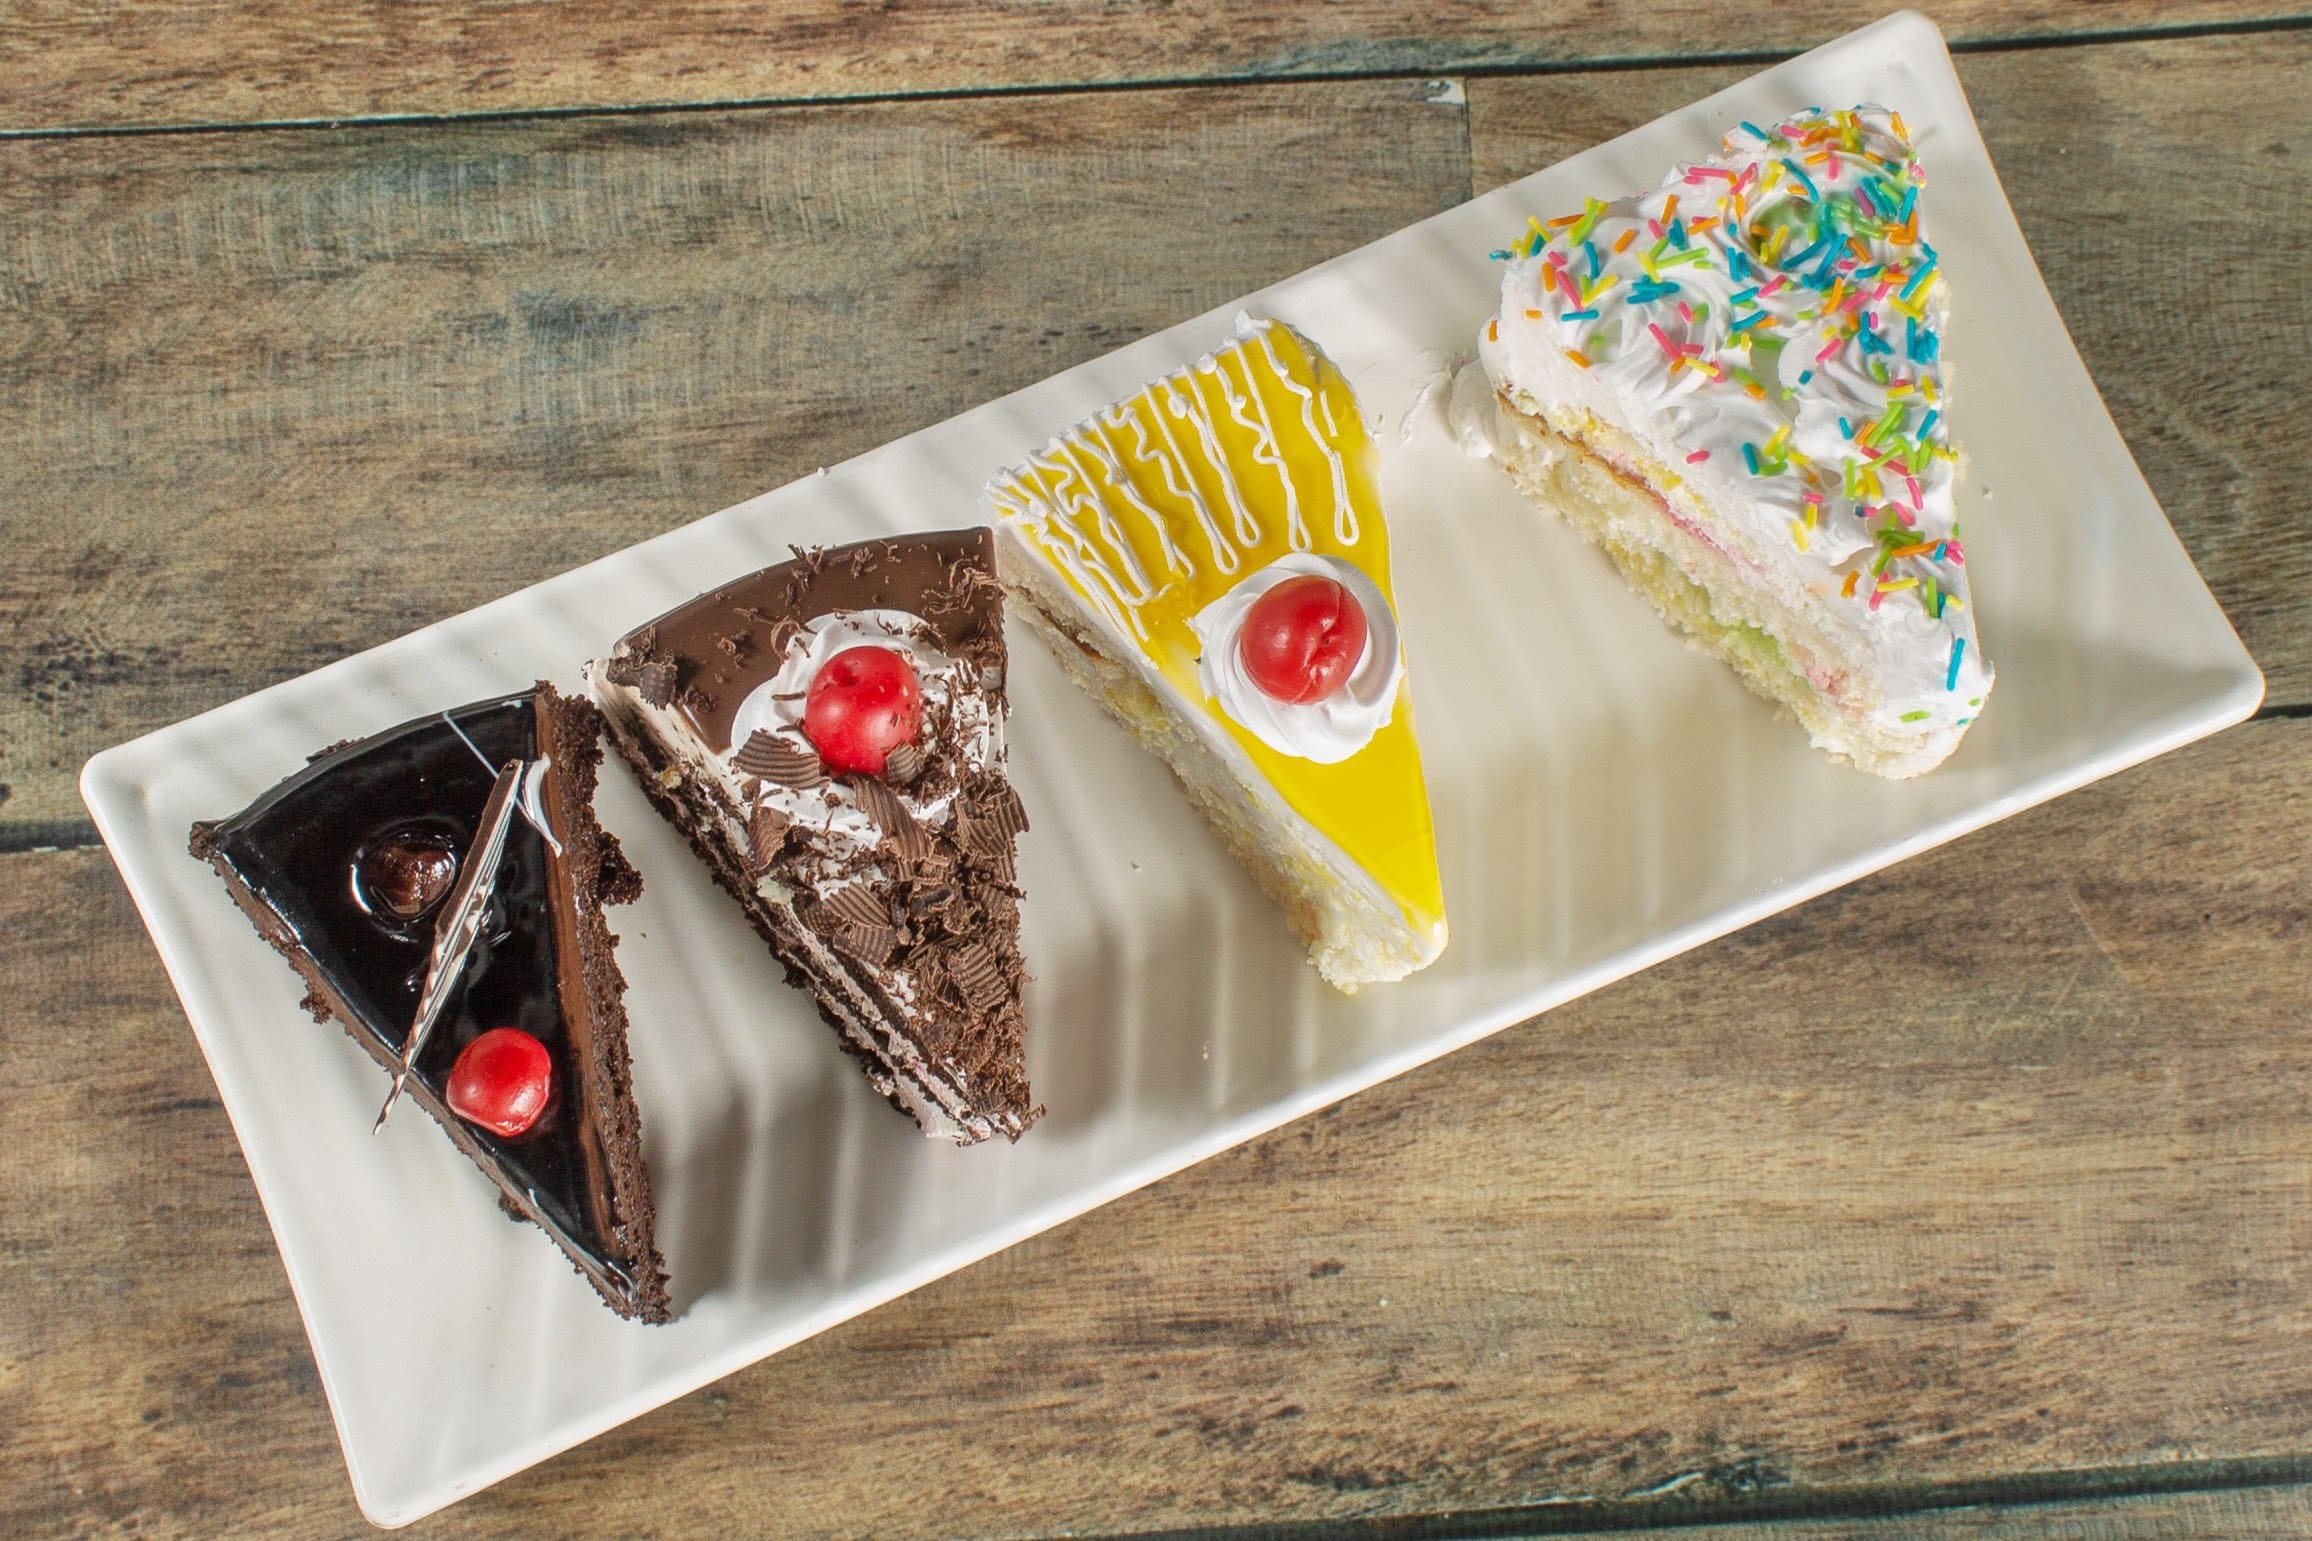 Cakes & Bakes, Raipur - Restaurant reviews